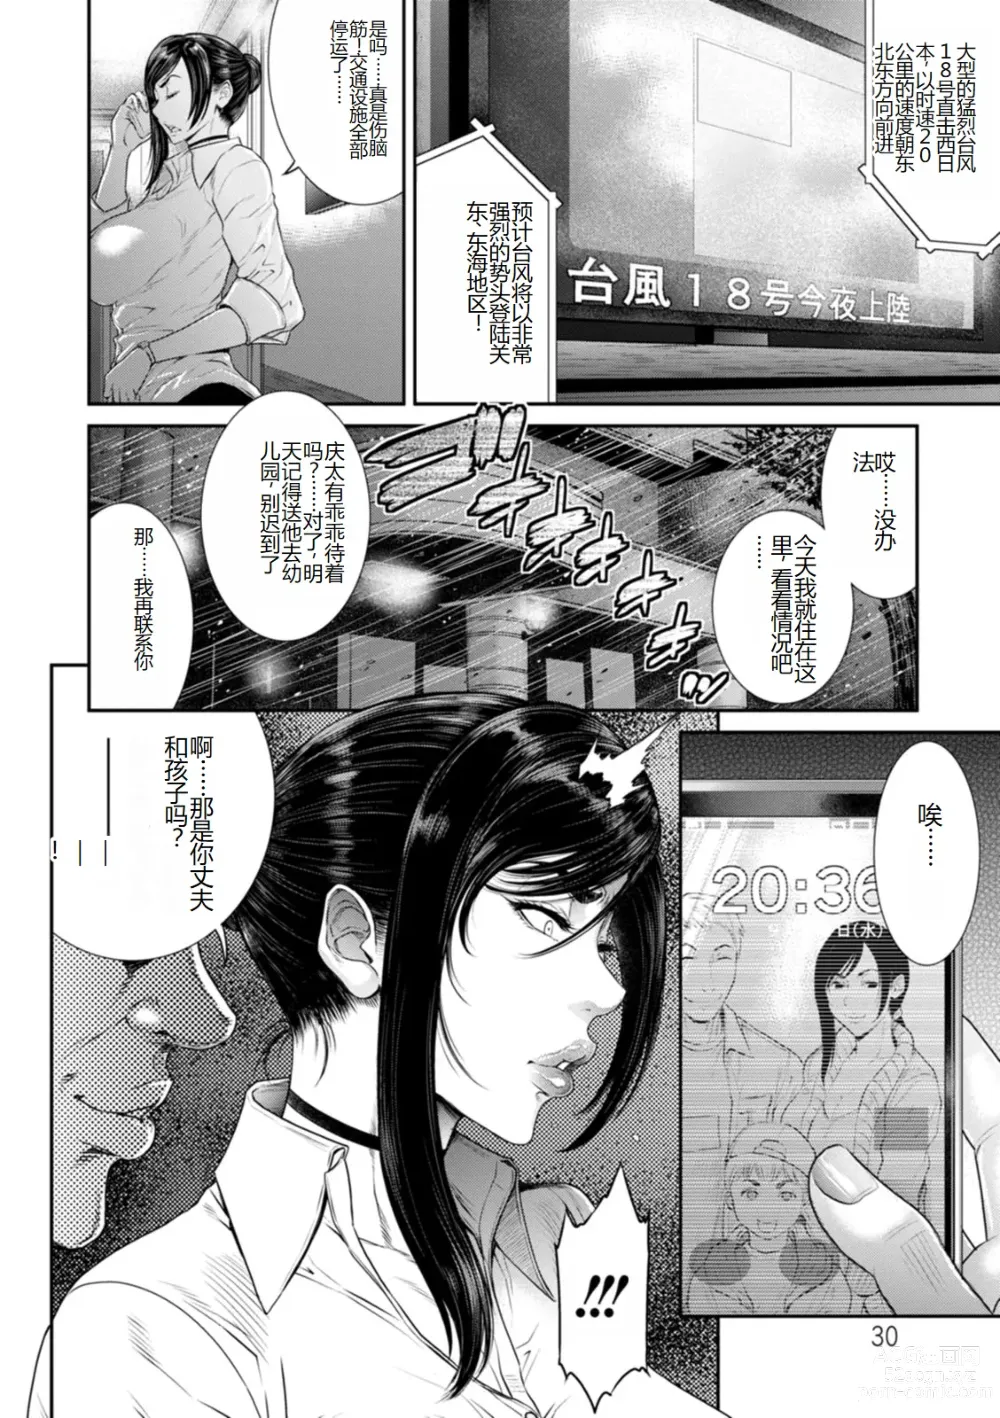 Page 30 of manga Waisetsu Box - Obscene Box